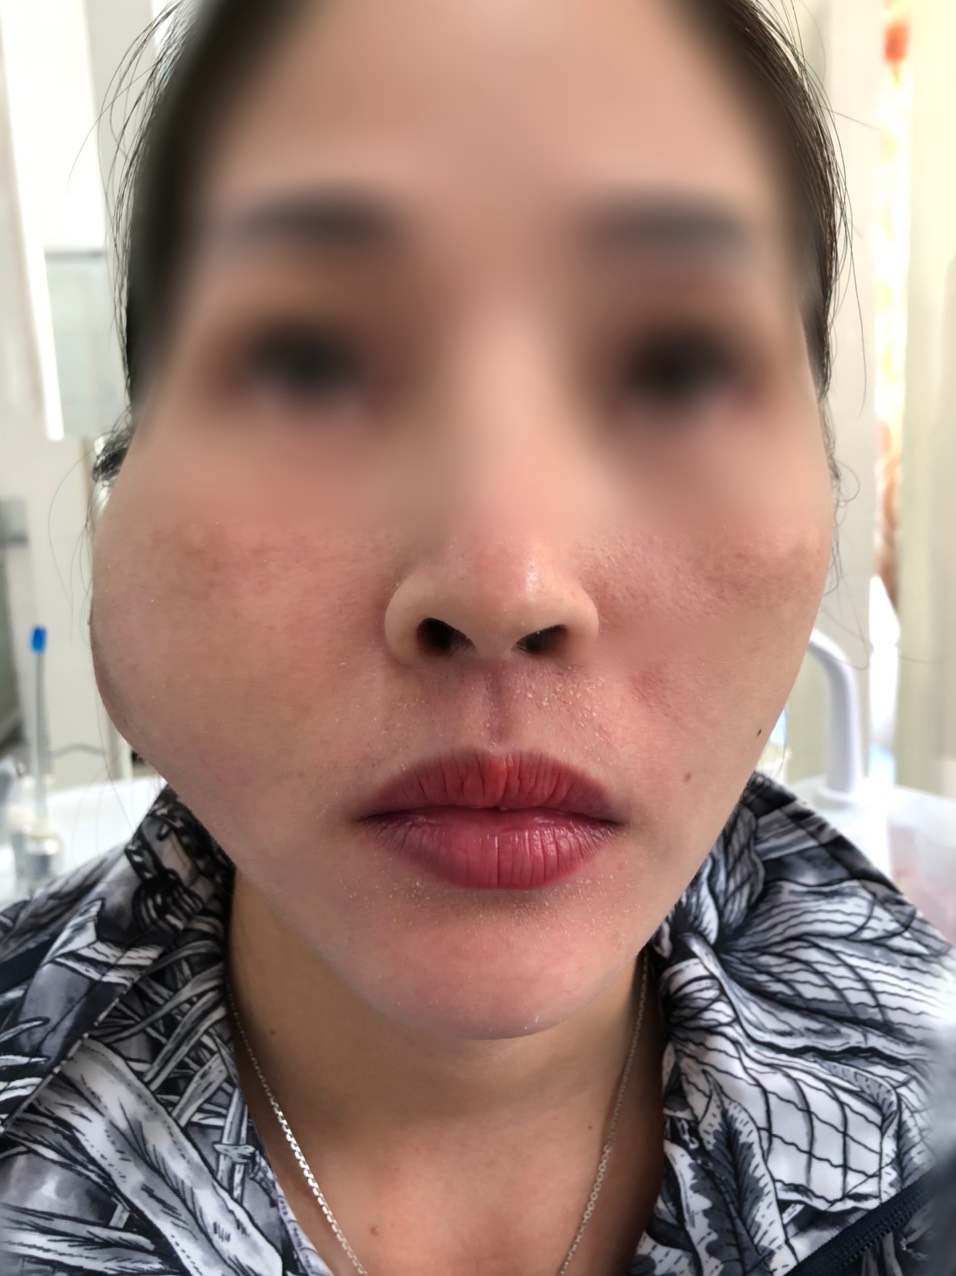 Khuôn mặt chị Q. bị biến dạng khi nhập viện điều trị